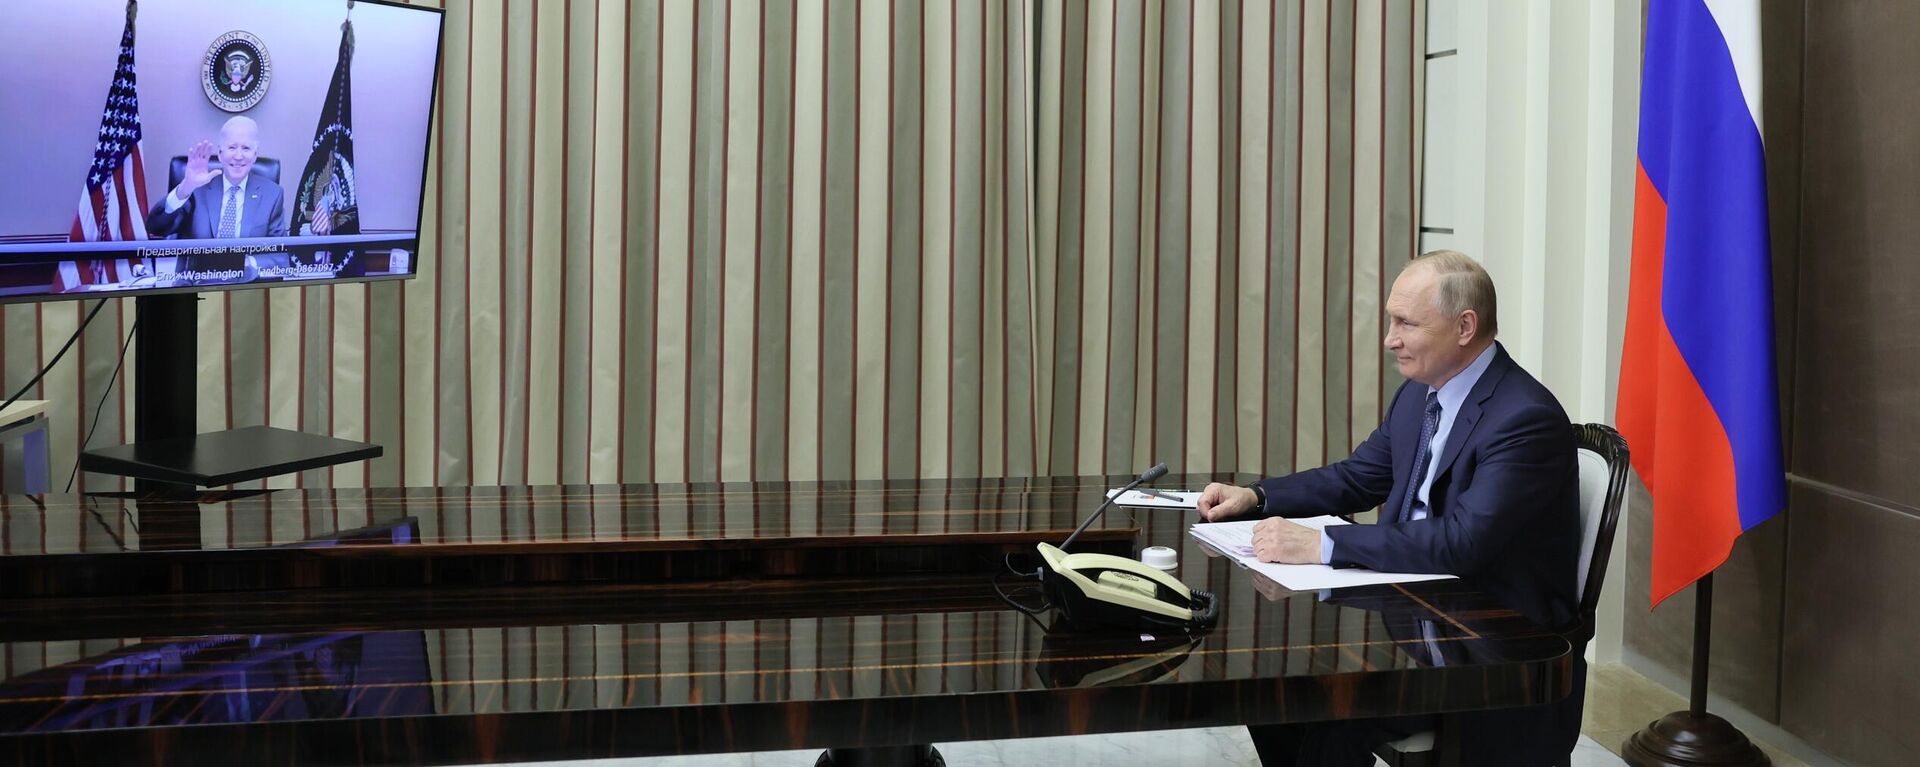 Переговоры президента РФ Владимира Путина и президента США Джо Байдена. Архивное фото - Sputnik Кыргызстан, 1920, 13.02.2022